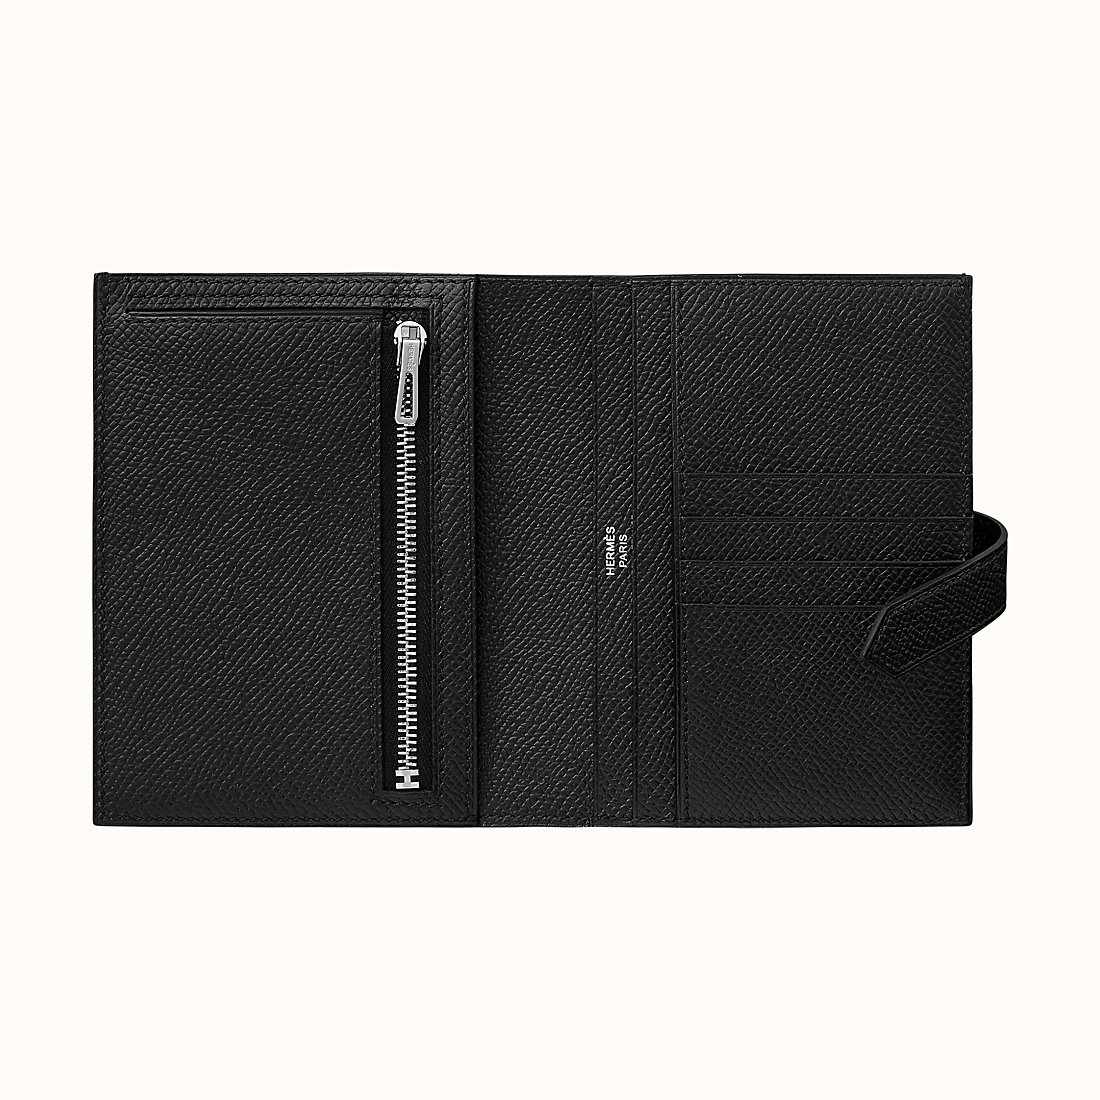 Hermes Bearn Compact wallet CK89 Noir Epsom calfskin